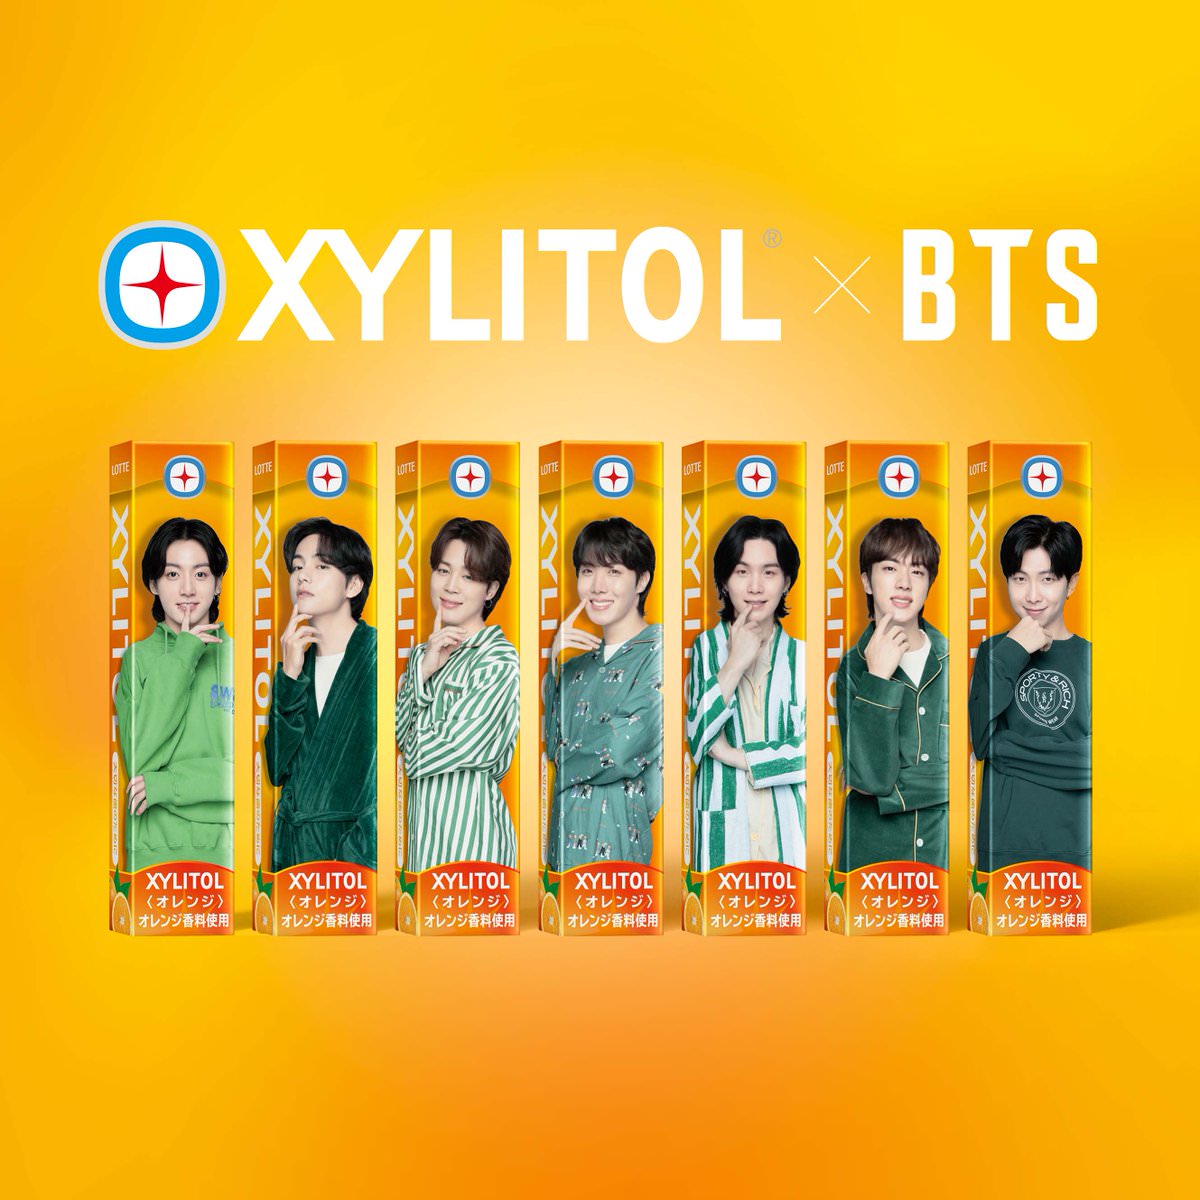 BTS × ロッテ「XYLITOL (キシリトール)」 7月25日より新ビジュアル登場!